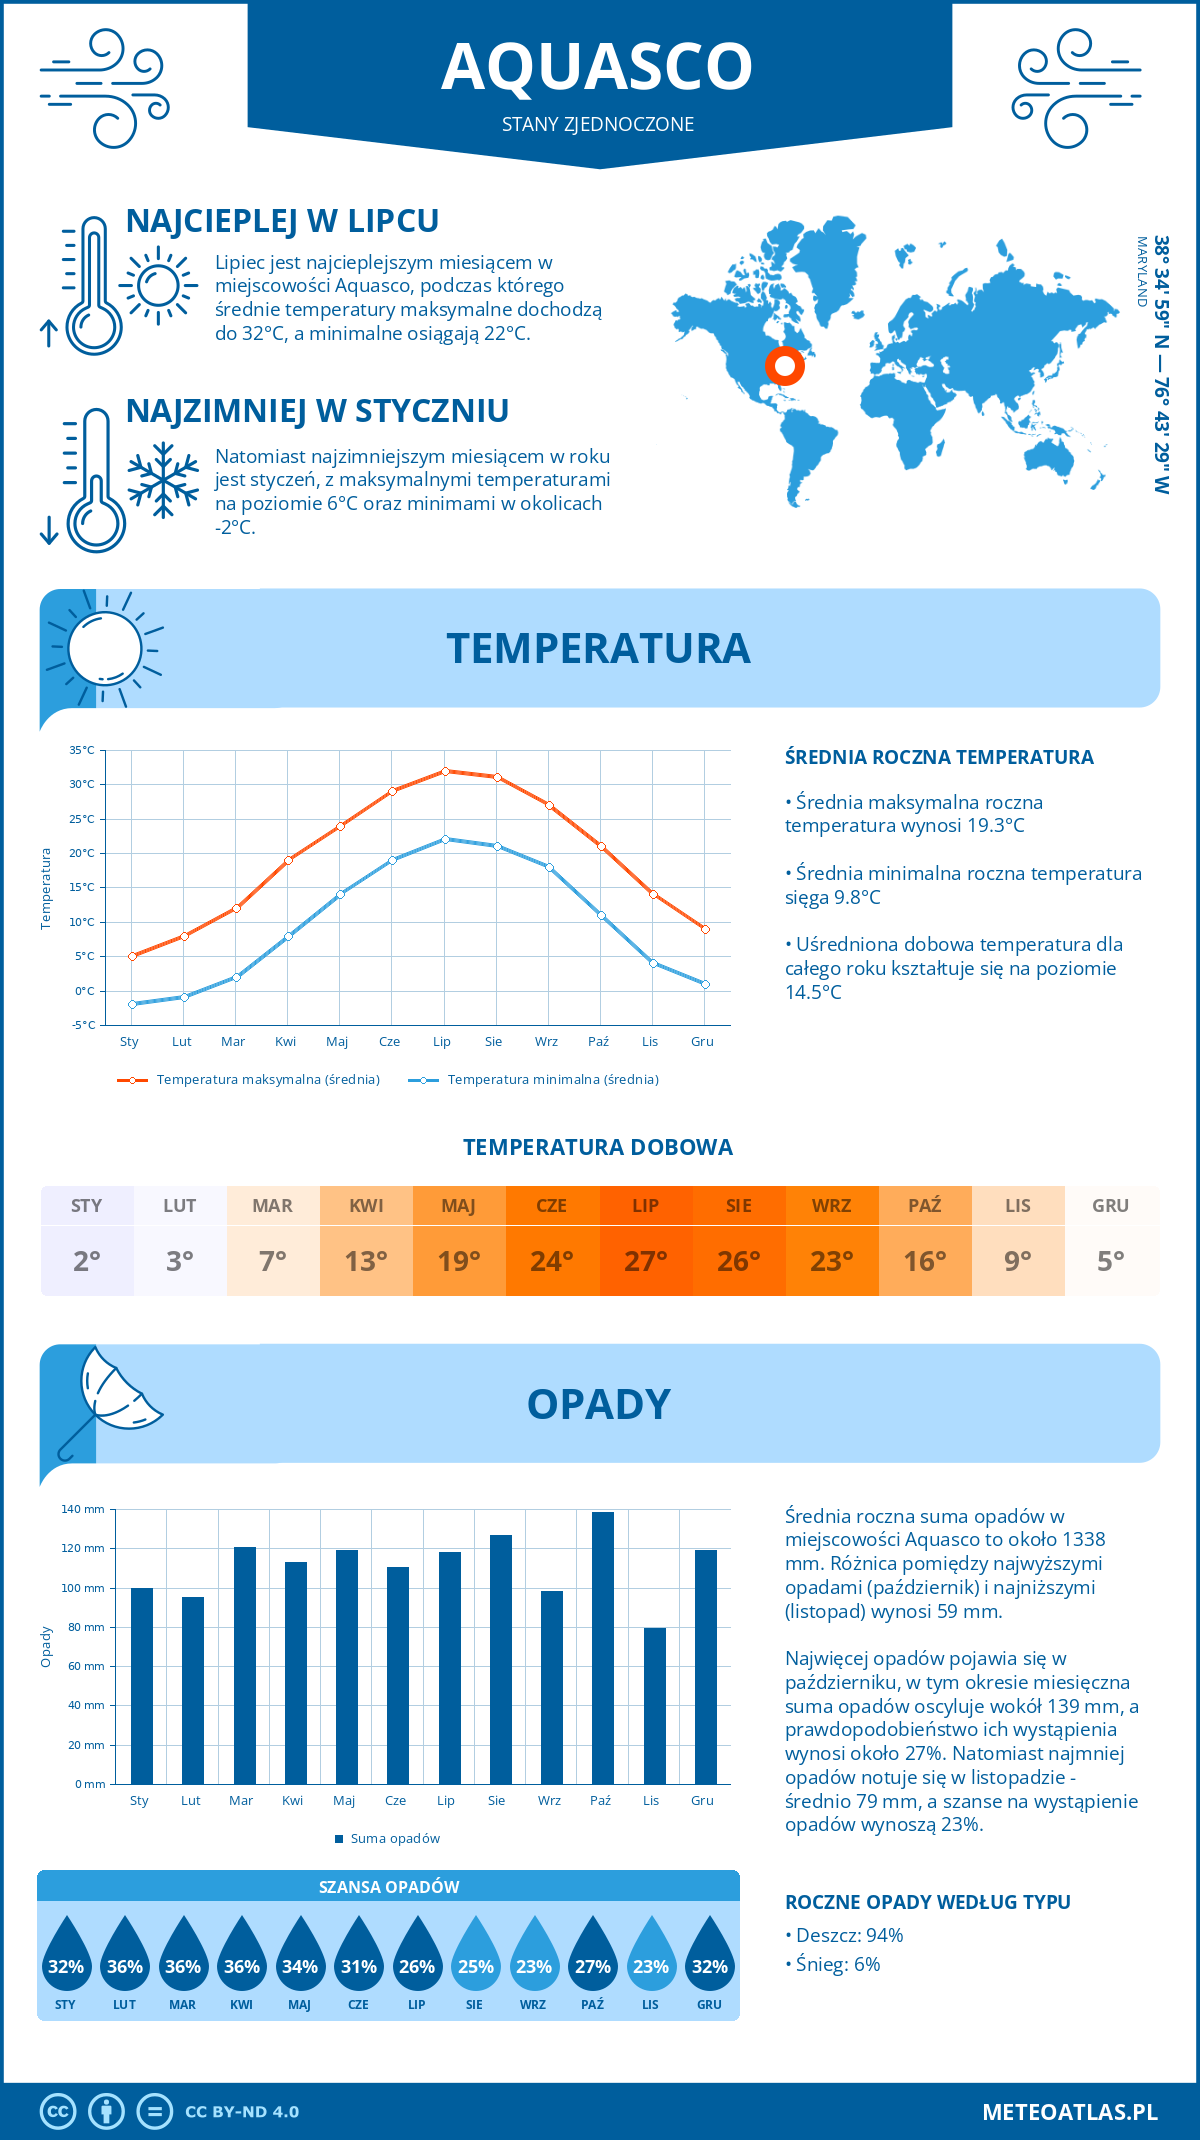 Pogoda Aquasco (Stany Zjednoczone). Temperatura oraz opady.